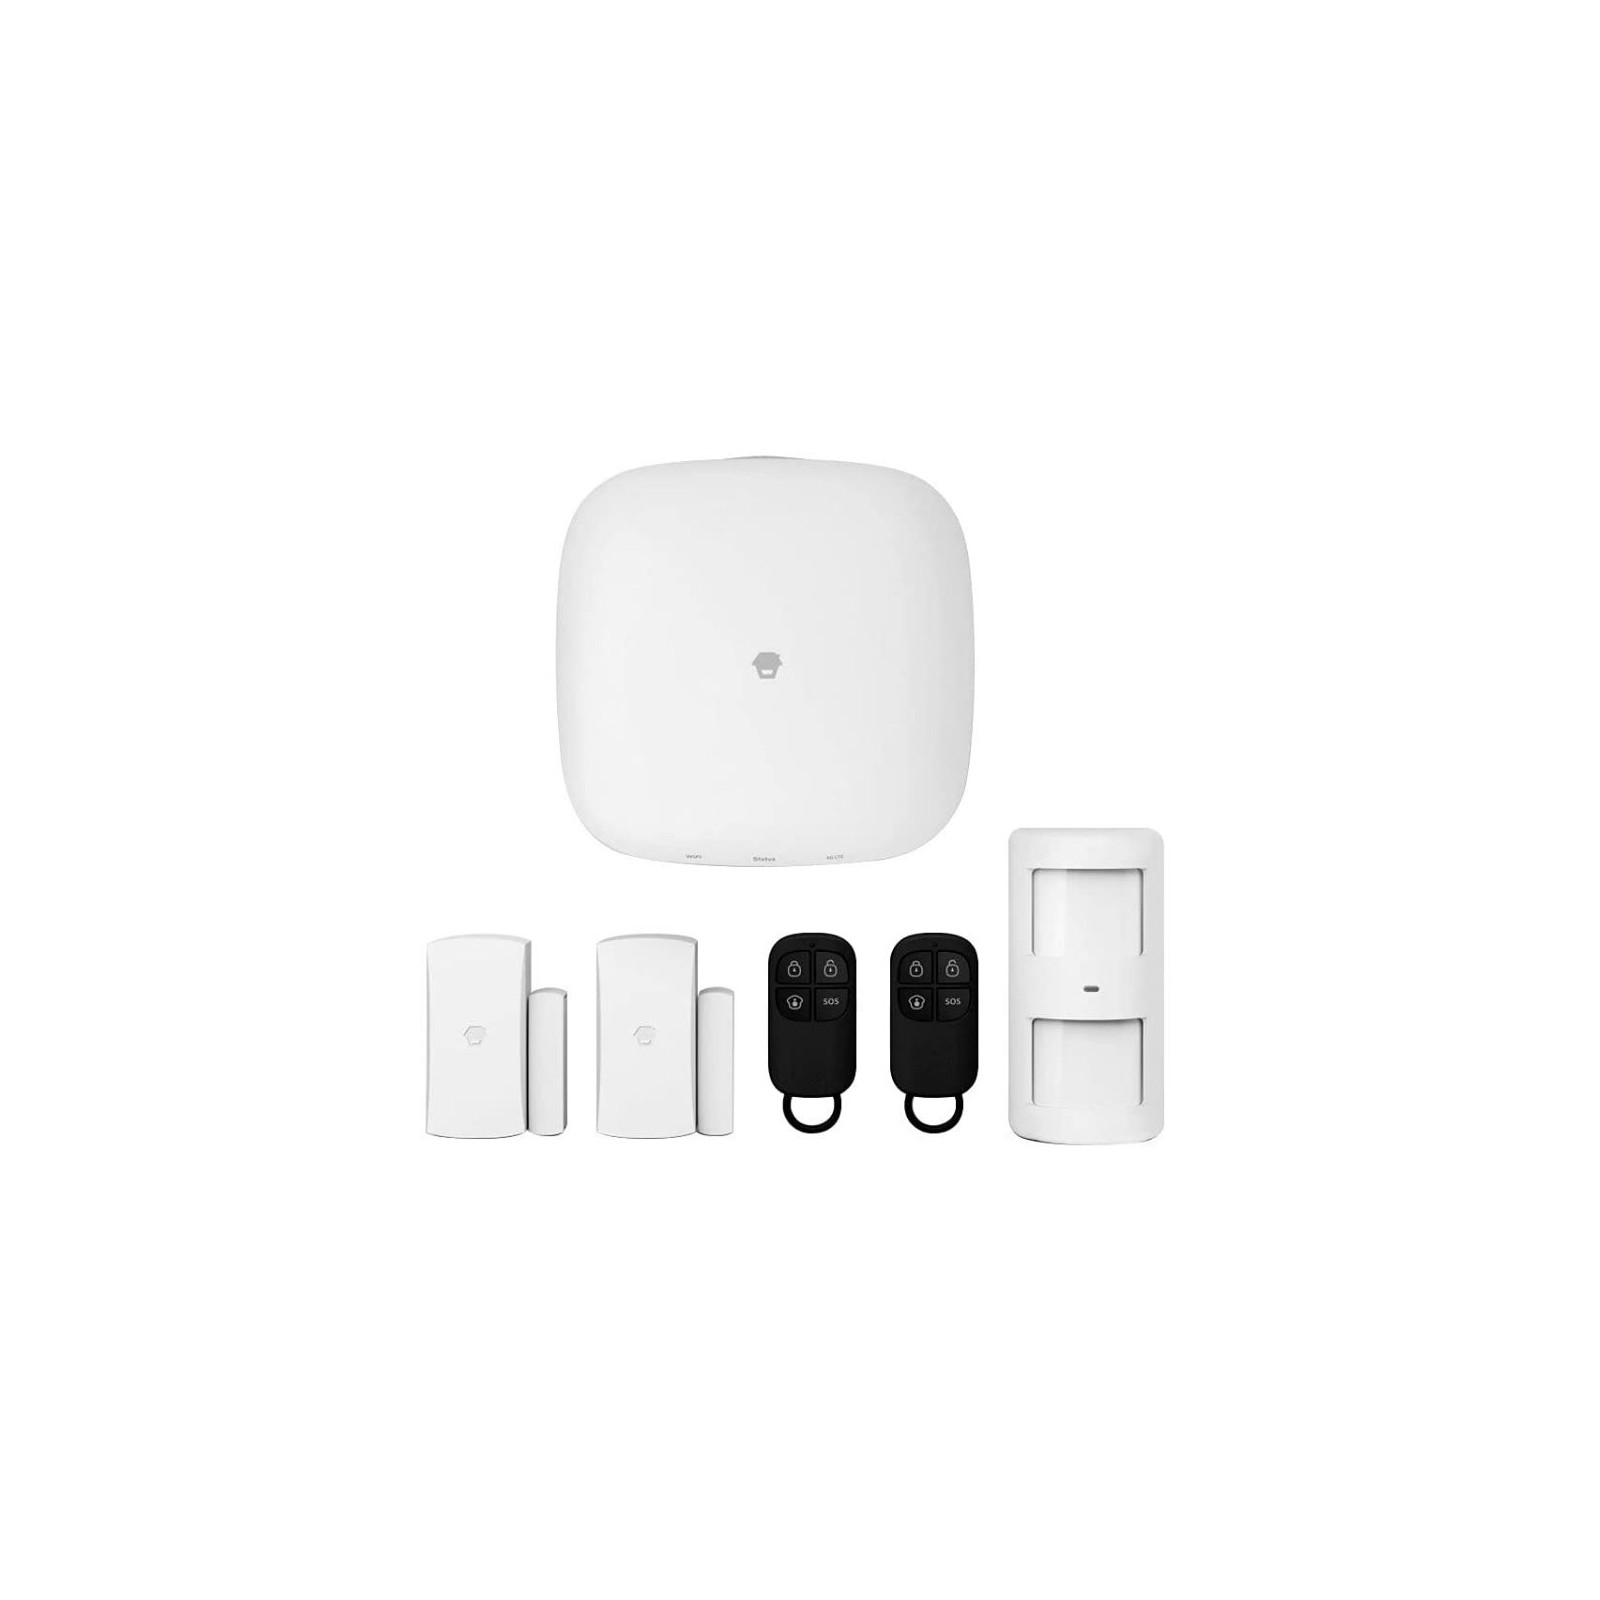 Chuango H4 Plus - Kit Sistema de Alarma WiFi/gsm Smart Home Compatible con Alexa y Philips Hue (Nuevo)